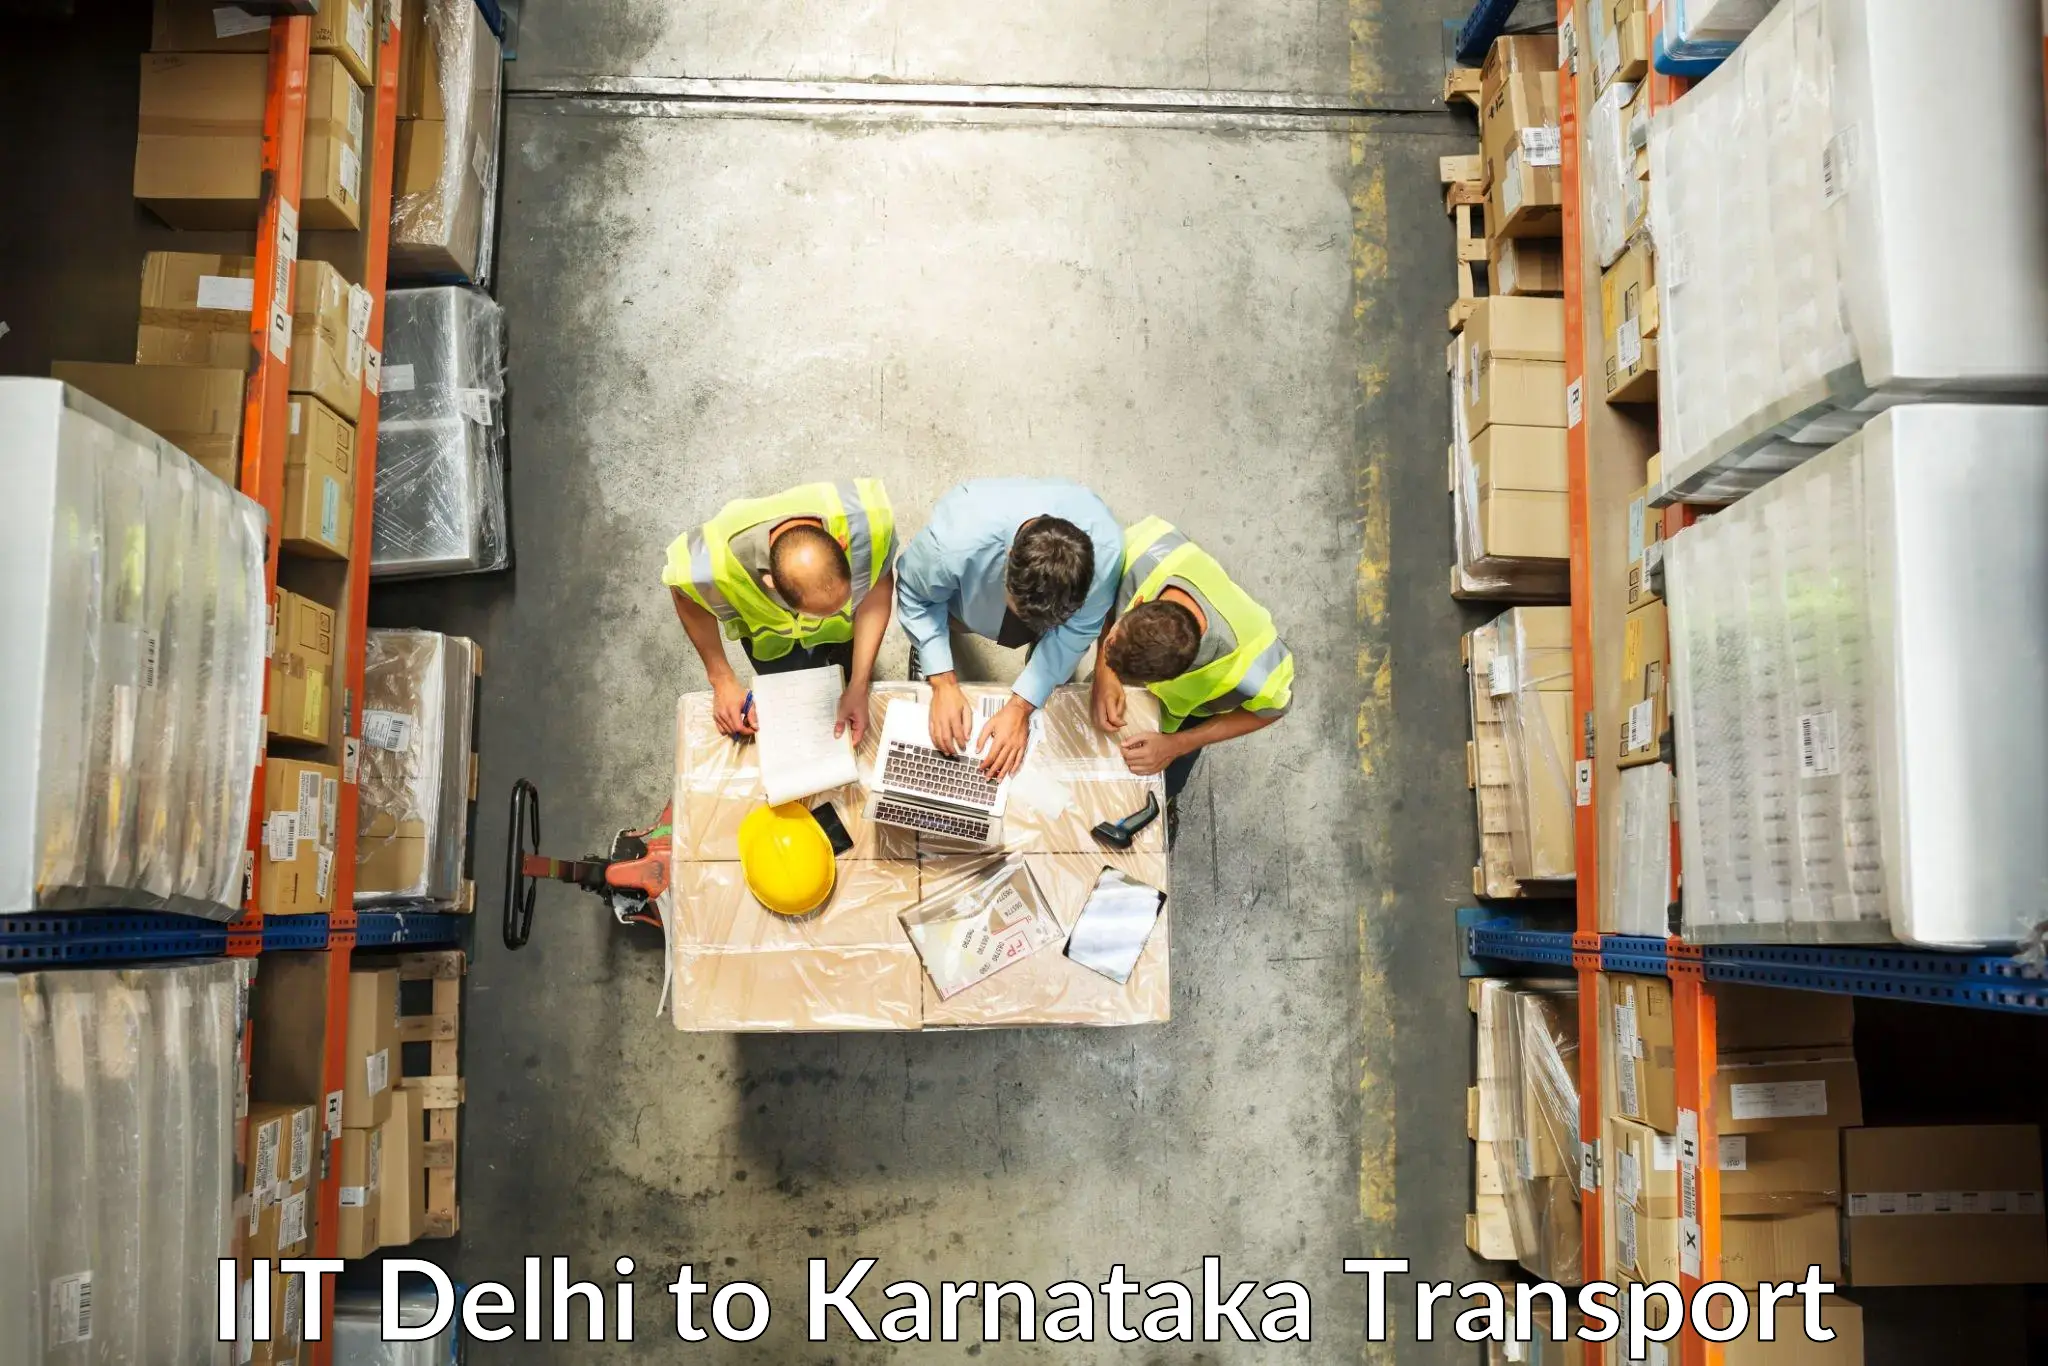 Lorry transport service IIT Delhi to Byndoor